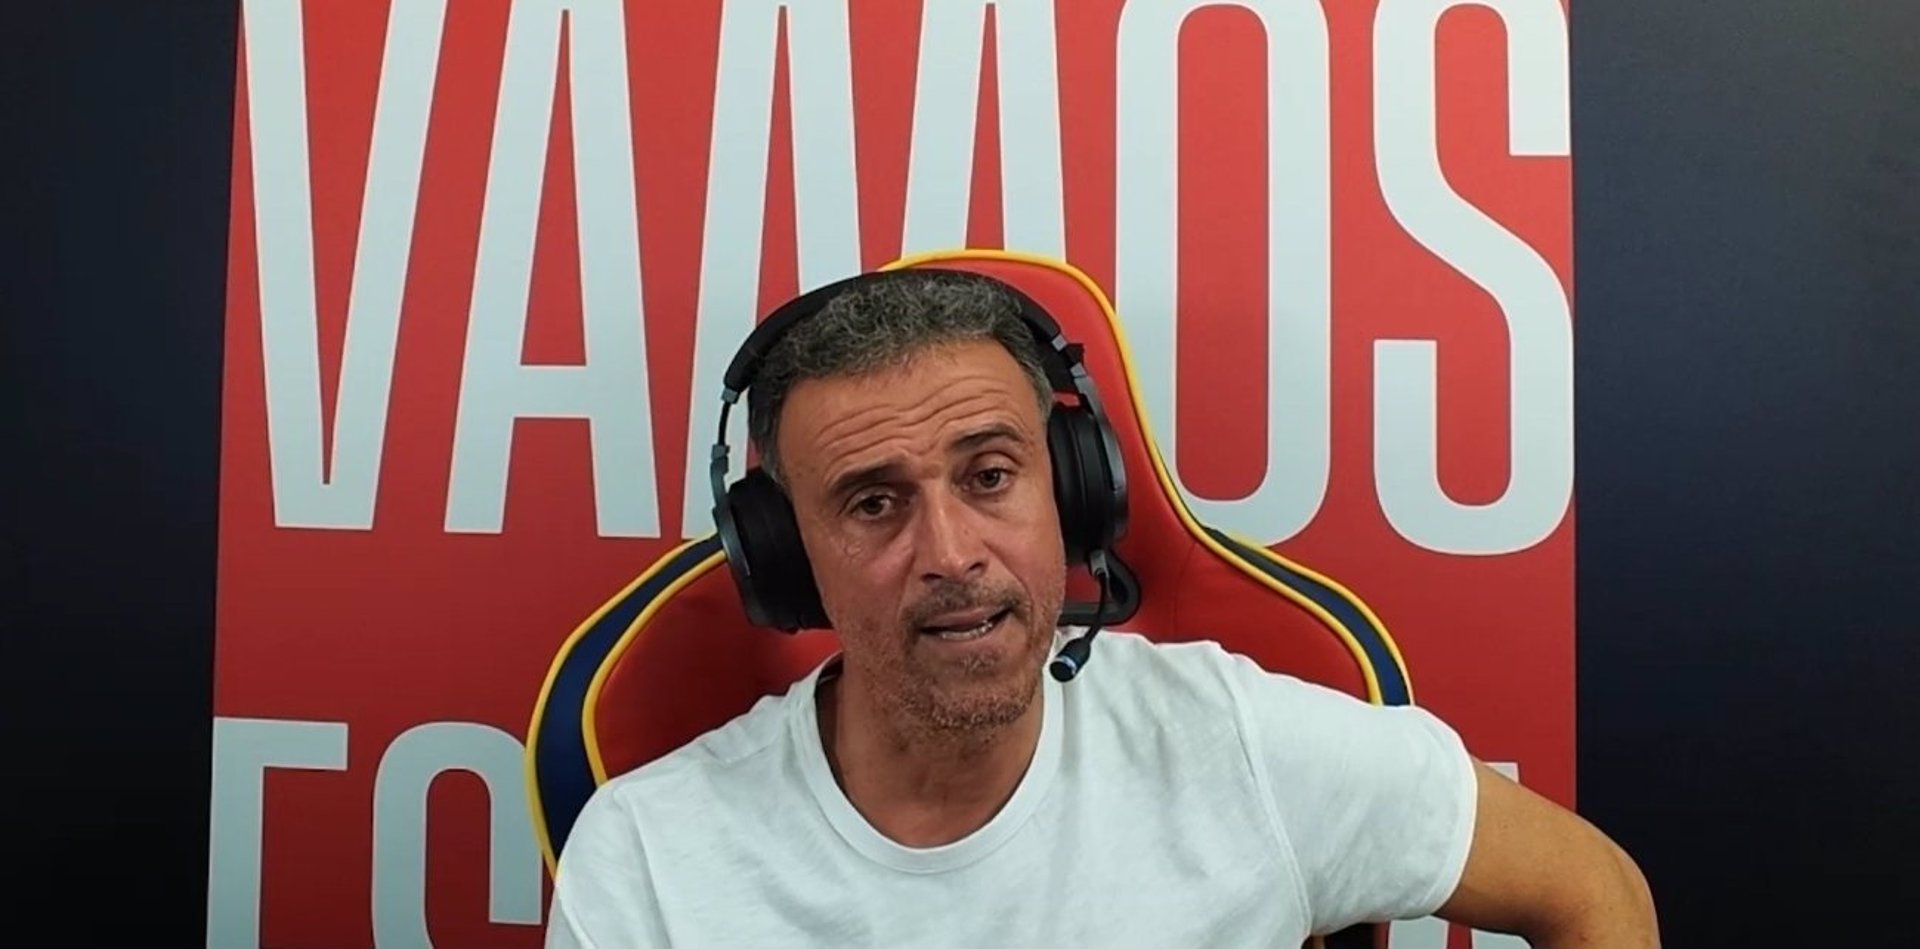 Luis Enrique bromea con presentarse a las elecciones si España gana el Mundial